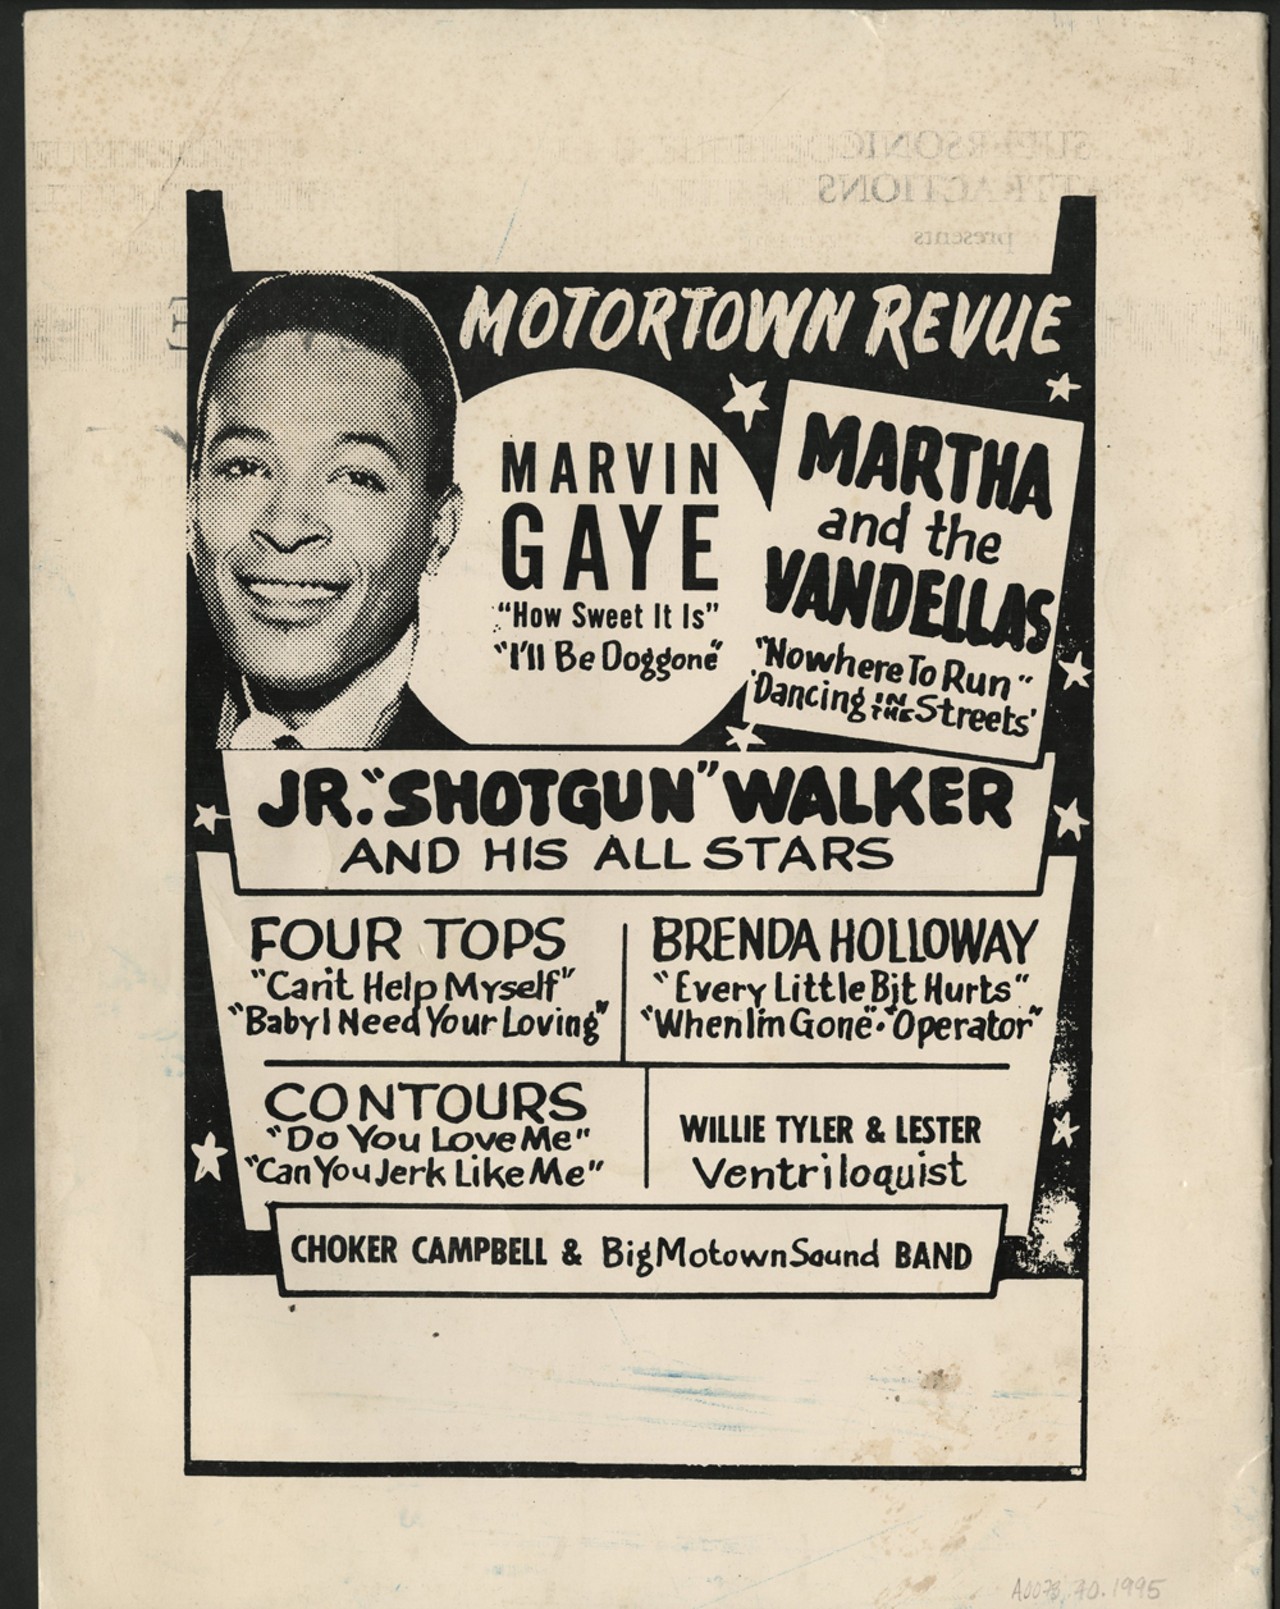 Motortown Revue flier. (Rosalind Ashford-Holmes Collection)